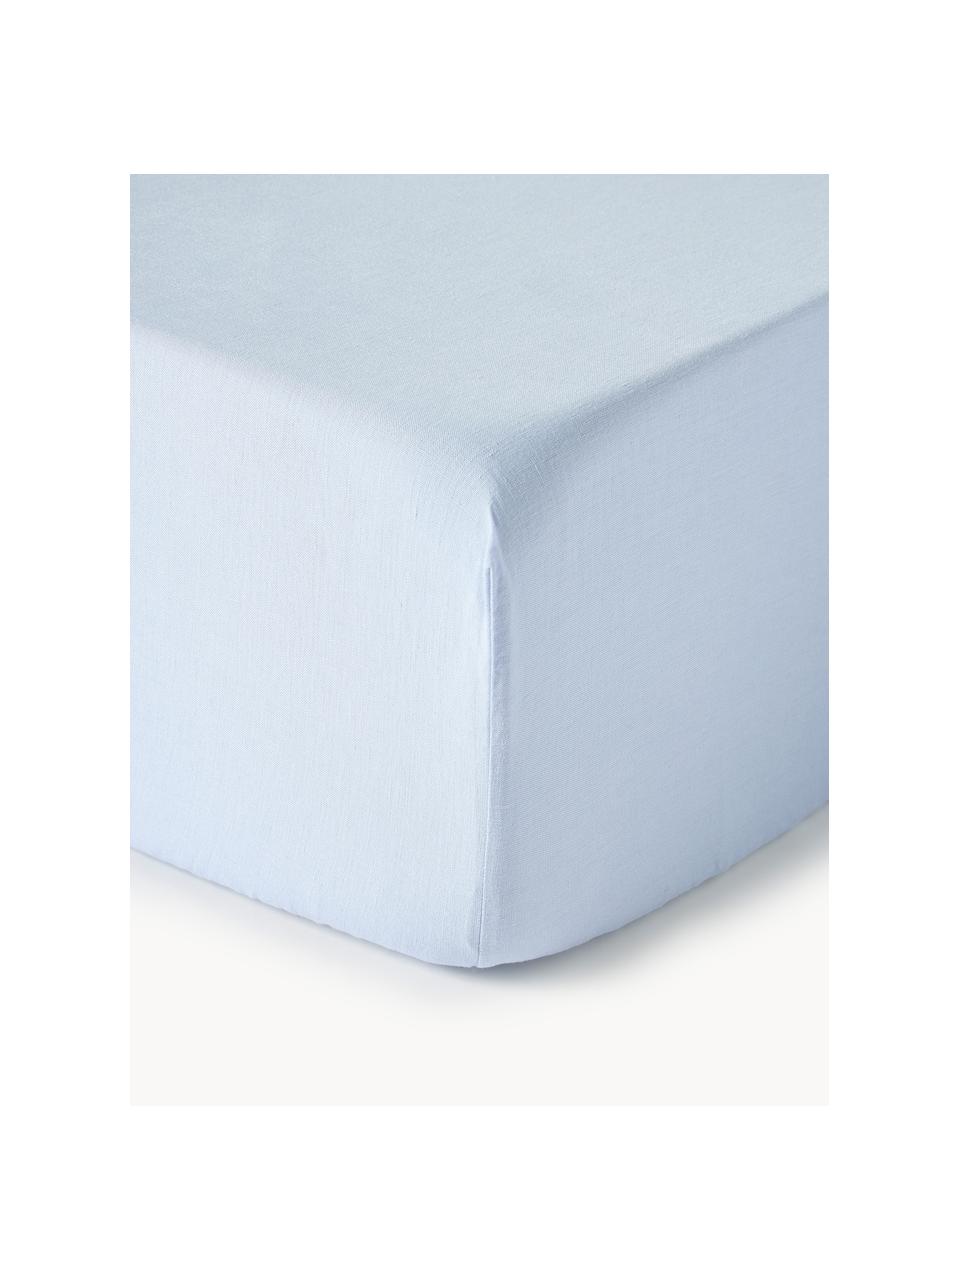 Napínací prostěradlo na kontinentální postel Airy, praný len, 100 % len
Hustota tkaniny 155 TC, standardní gramáž

Len je přírodní vlákno vyznačující se prodyšností, odolností a měkkostí. Len je také chladivý a savý materiál, který rychle absorbuje a odvádí vlhkost, takže je ideální pro použití při vyšších teplotách.

Materiál použitý v tomto produktu byl testován na škodlivé látky a certifikován podle STANDARD 100 od OEKO-TEX®, 6760CIT, CITEVE., Světle modrá, Š 90 cm, D 200 cm, V 35 cm